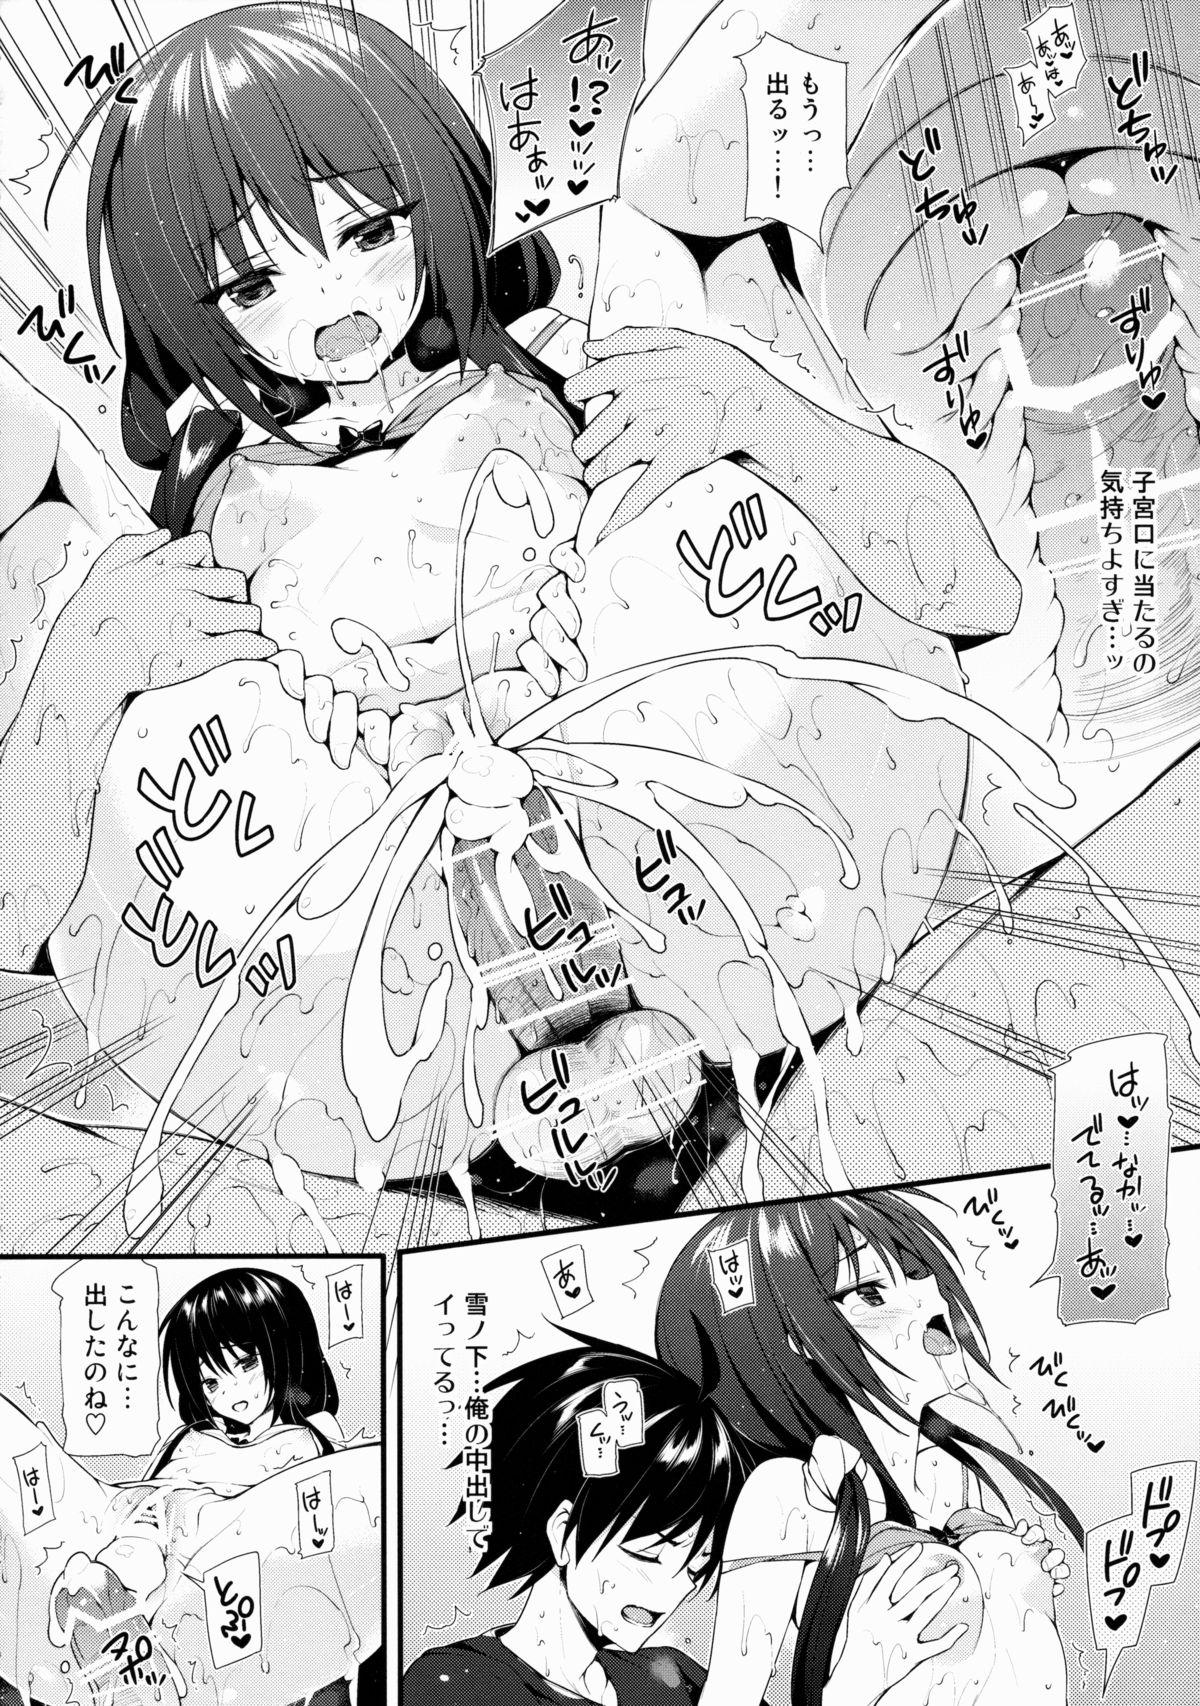  Harunon to Himatsubushi - Yahari ore no seishun love come wa machigatteiru Camshow - Page 3